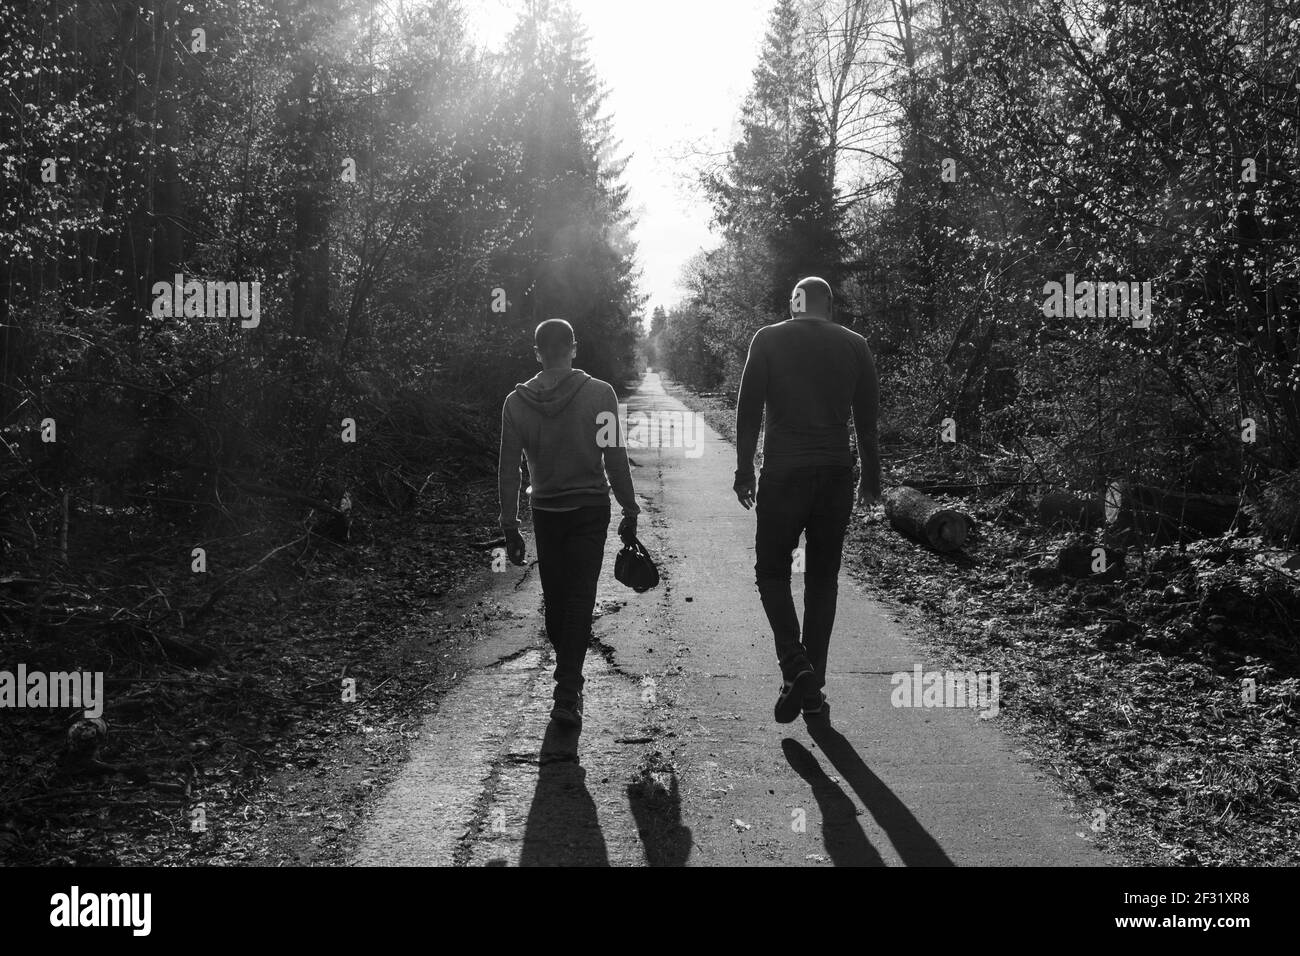 Zwei Freunde laufen entlang der Gasse, traurige Stimmung, Atmosphäre des Streits oder Groll; Schwarz-Weiß-Foto Stockfoto